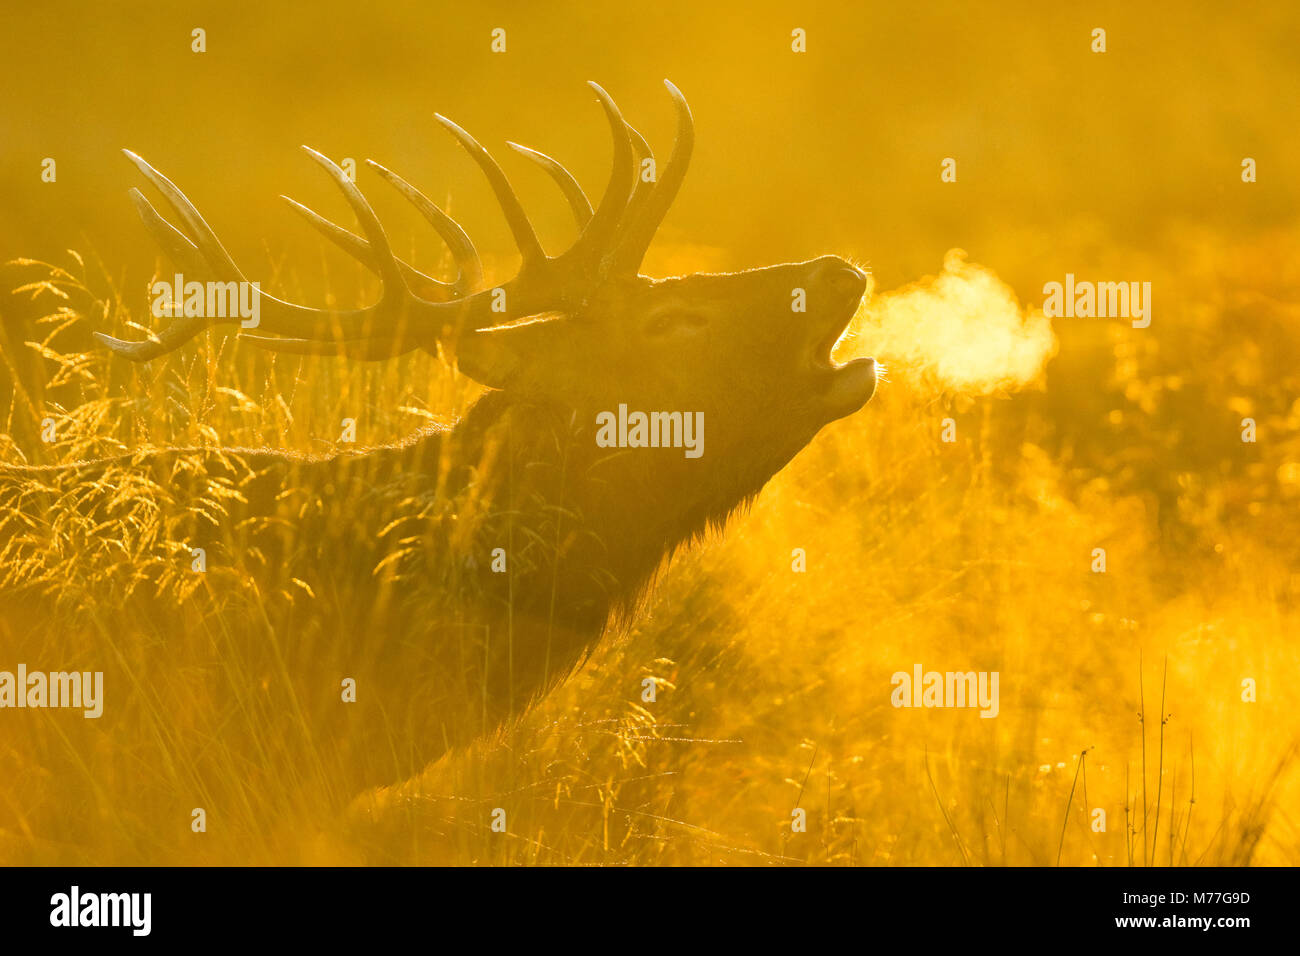 Red Deer stag bei Sonnenaufgang, Richmond Park, Greater London, England, Vereinigtes Königreich, Europa Stockfoto